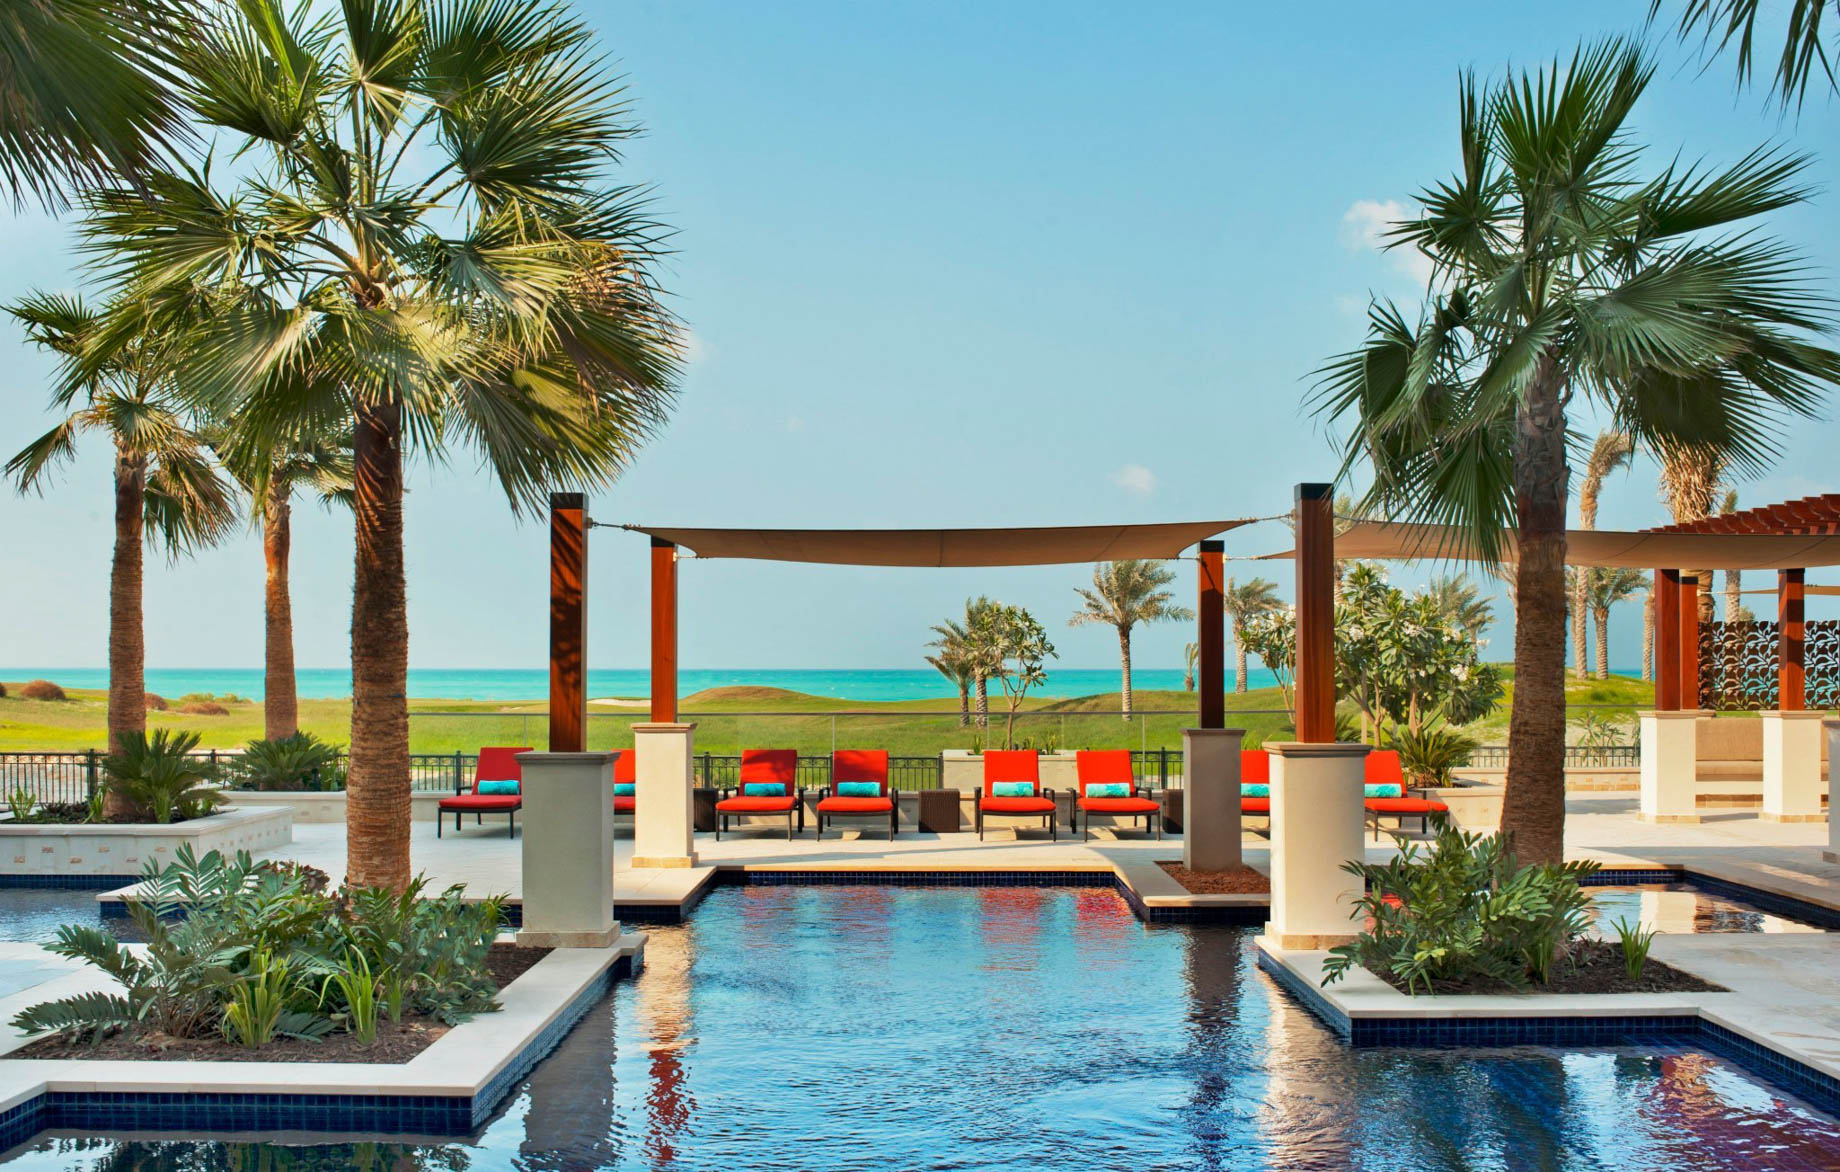 The St. Regis Saadiyat Island Resort – Abu Dhabi, UAE – Exterior Pool Day